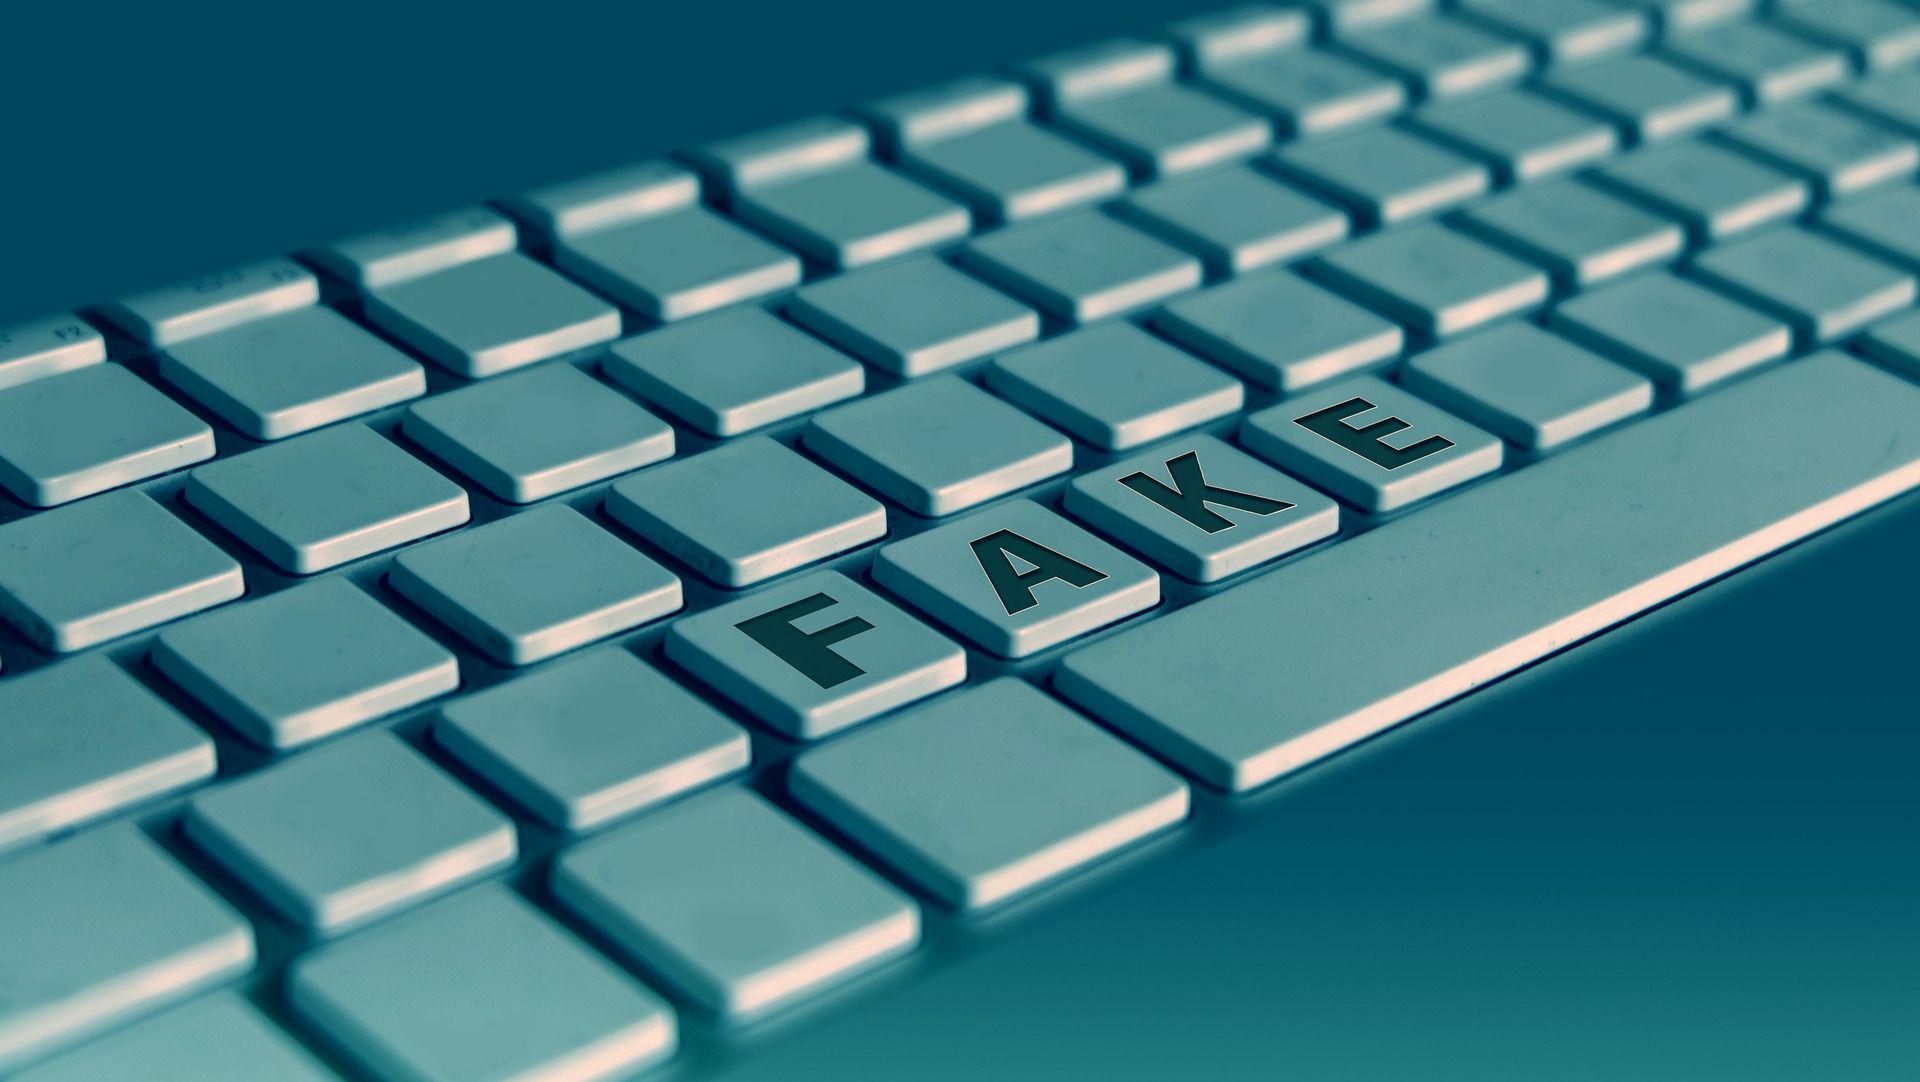 Uma renderização digital de um teclado com um conjunto de teclas soletrando 'FAKE'